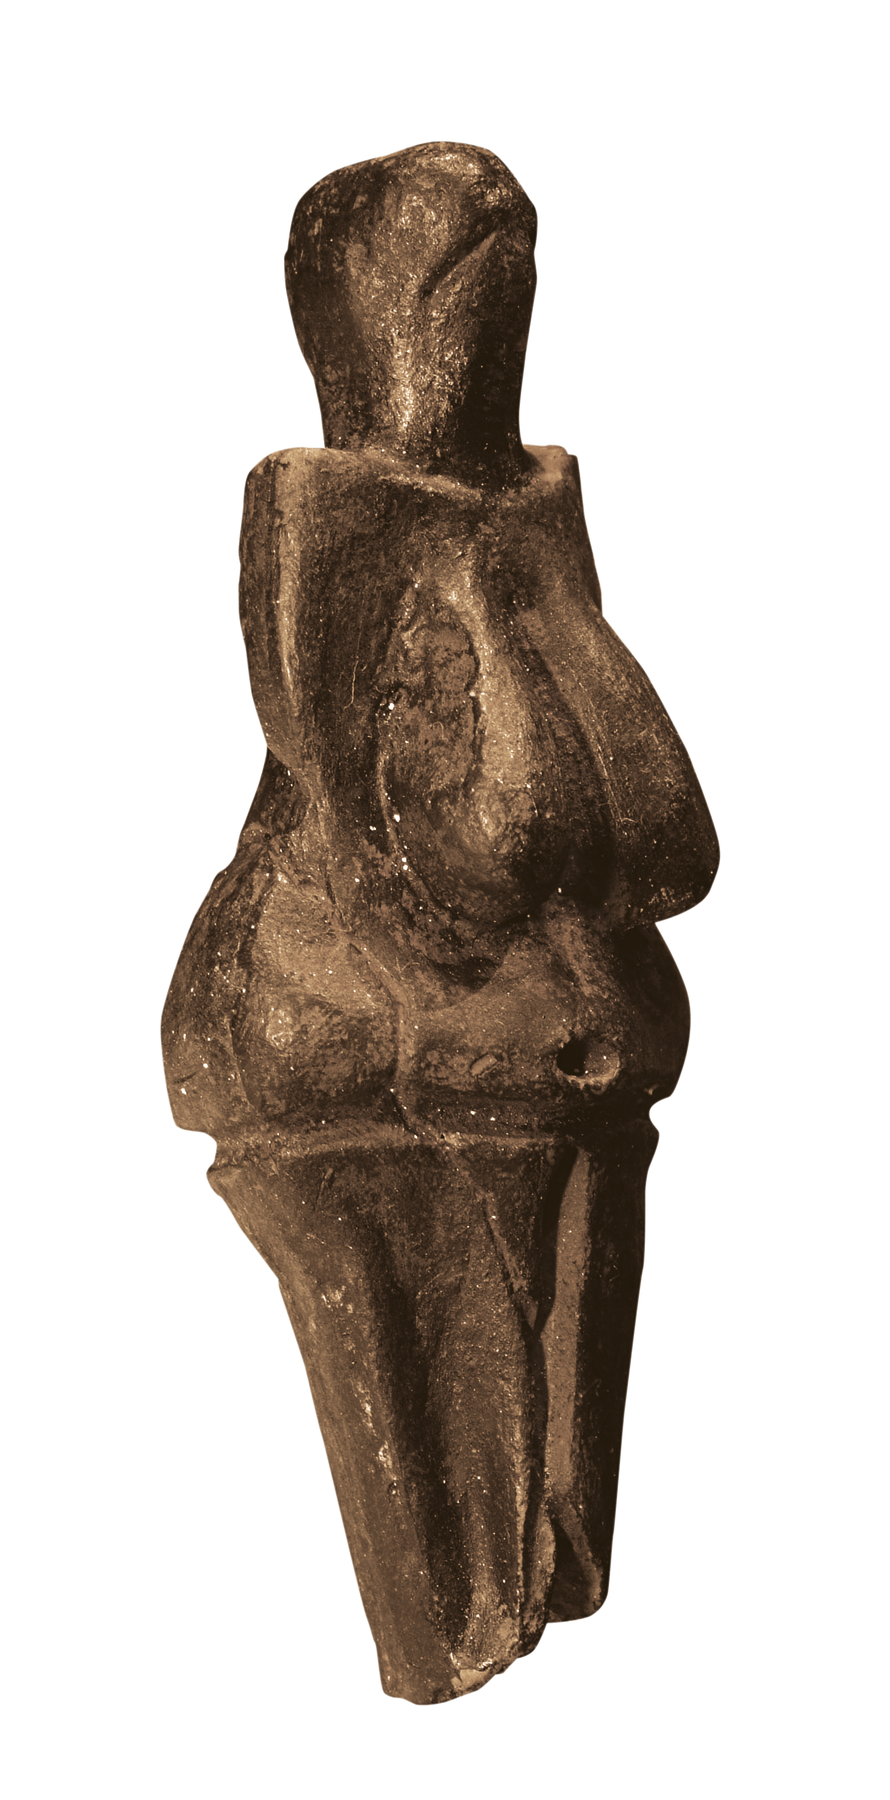 Fotografia. Três ângulos (frontal, lateral e posterior) de escultura em argila escura de mulher nua, de formas arredondadas e volumosas, seios grandes e flácidos, sem braços e pés e sem rosto definido.